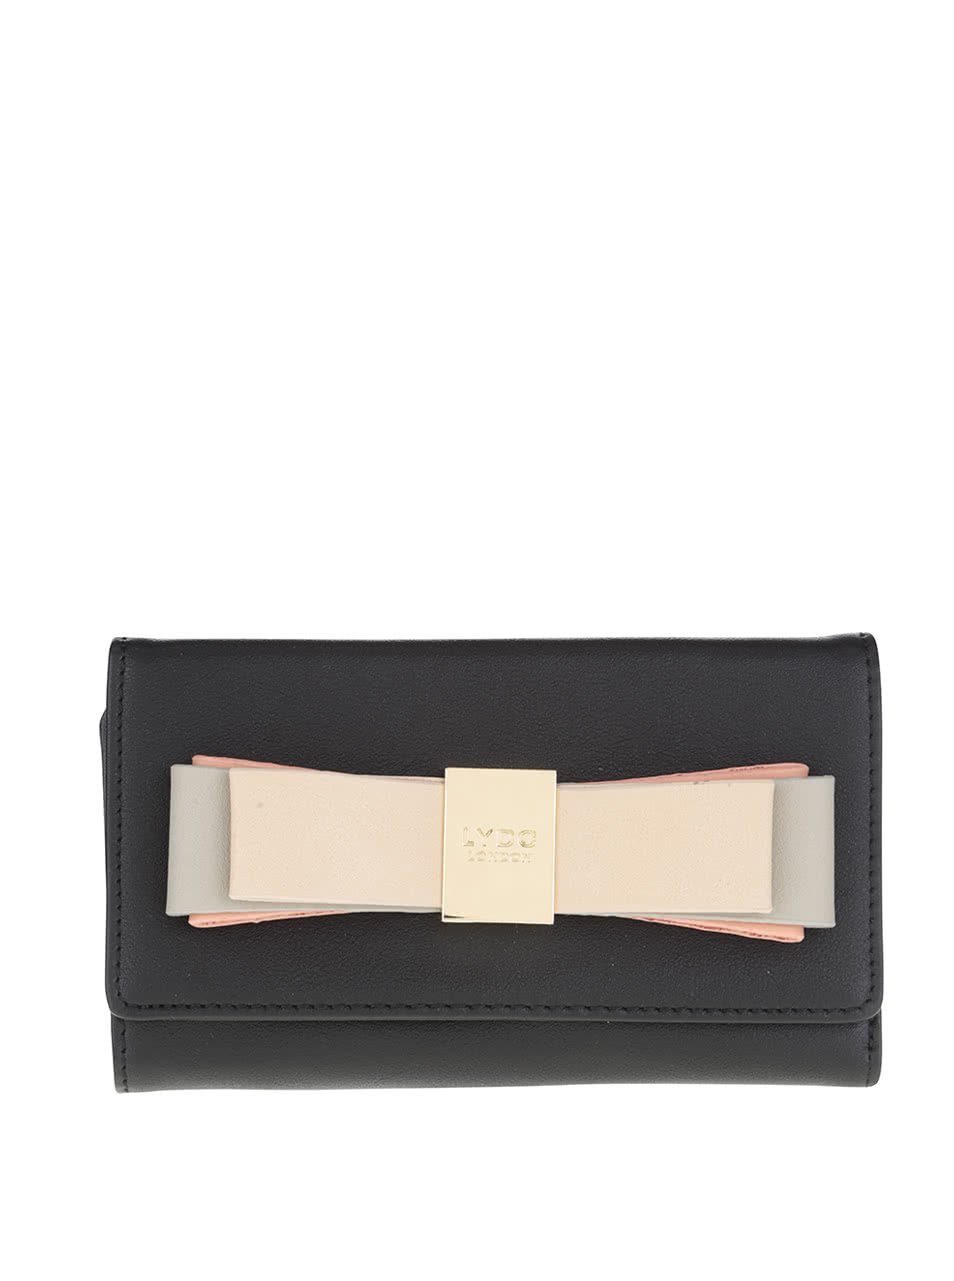 Černá peněženka s mašlí a detailem ve zlaté barvě LYDC